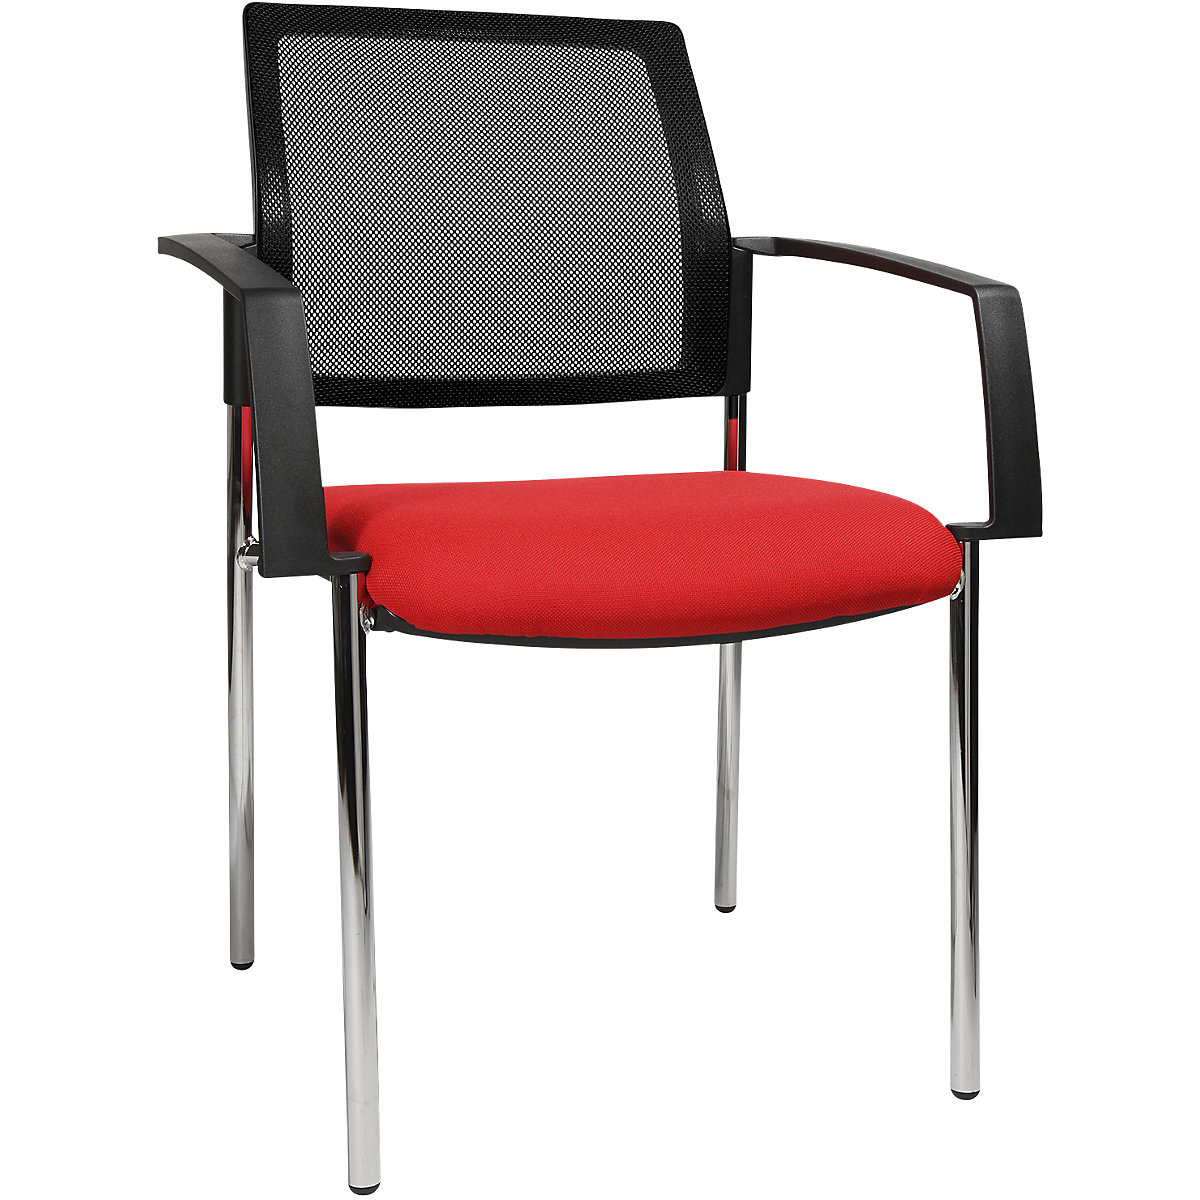 Krzesło do ustawiania w stos z oparciem z siateczki – Topstar, 4 nogi, opak. 2 szt., siedzisko czerwone, szkielet chrom-4